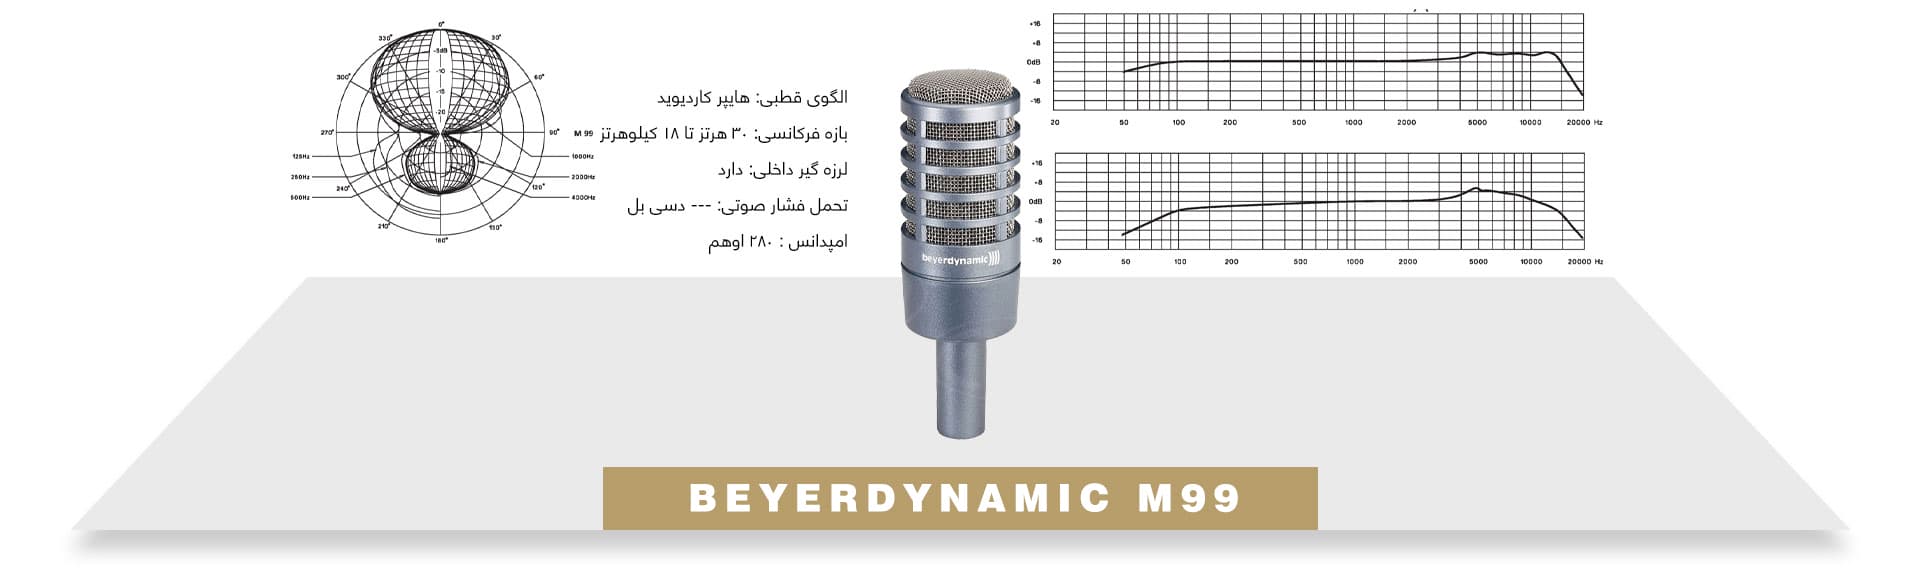 میکروفون داینامیک پادکست برادکست beyerdynamic M99